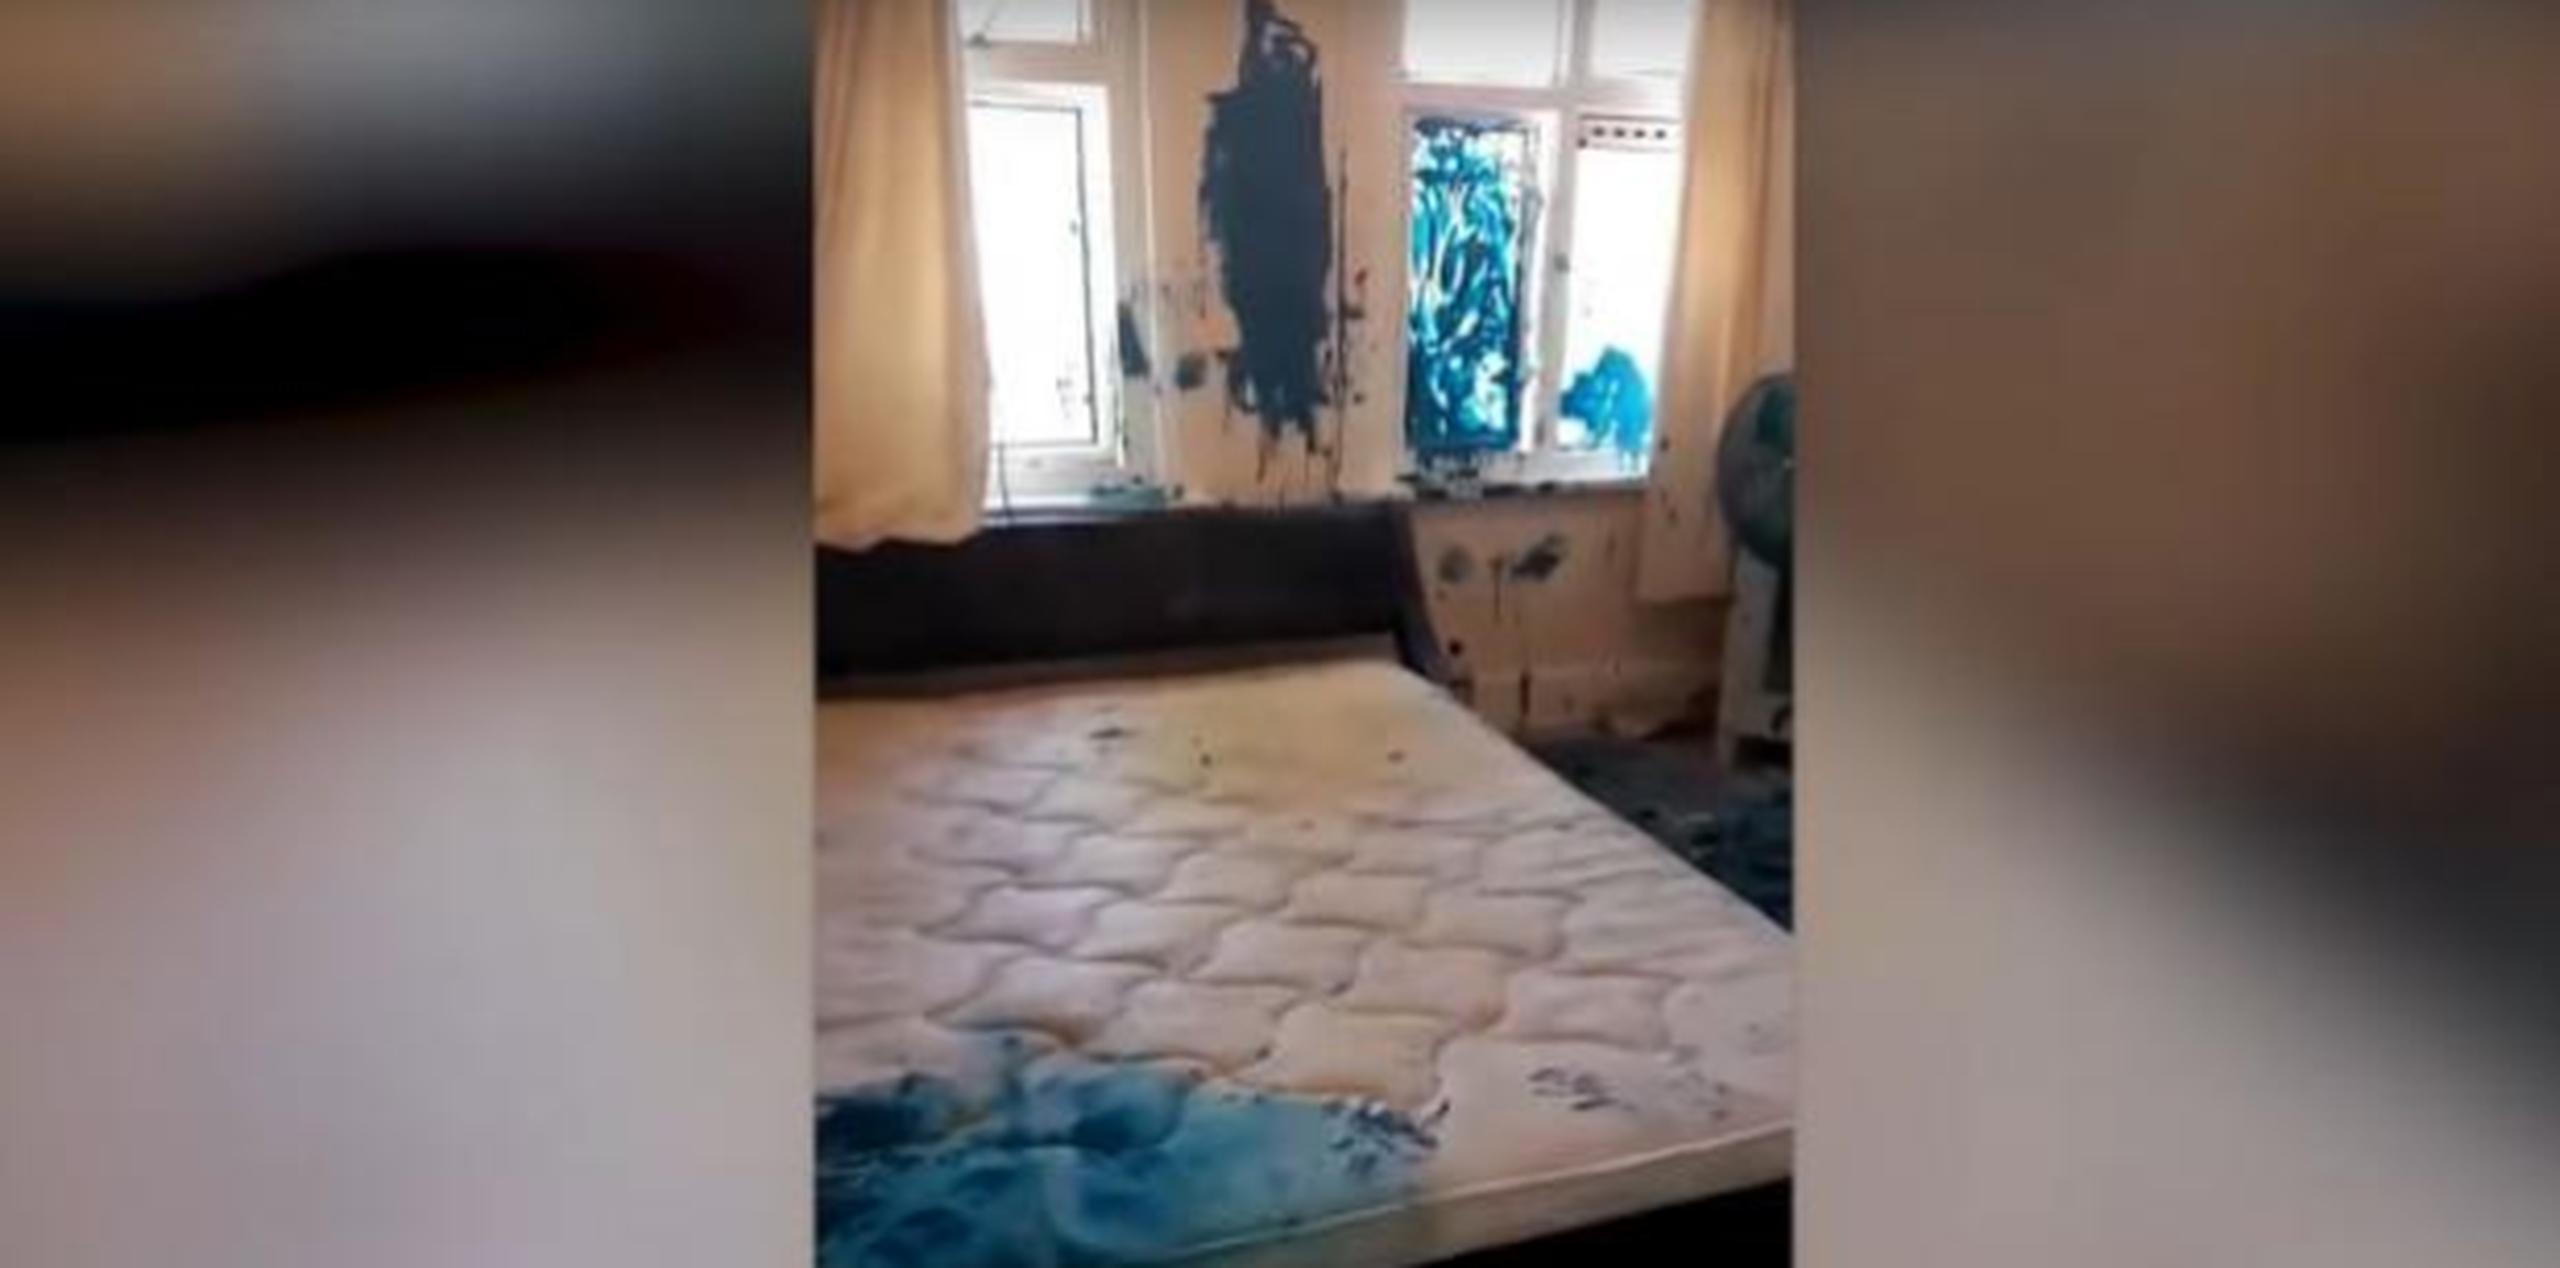 Paredes, camas, mueble y ropa terminaron cubiertas de pintura azul. (Foto: captura de vídeo)